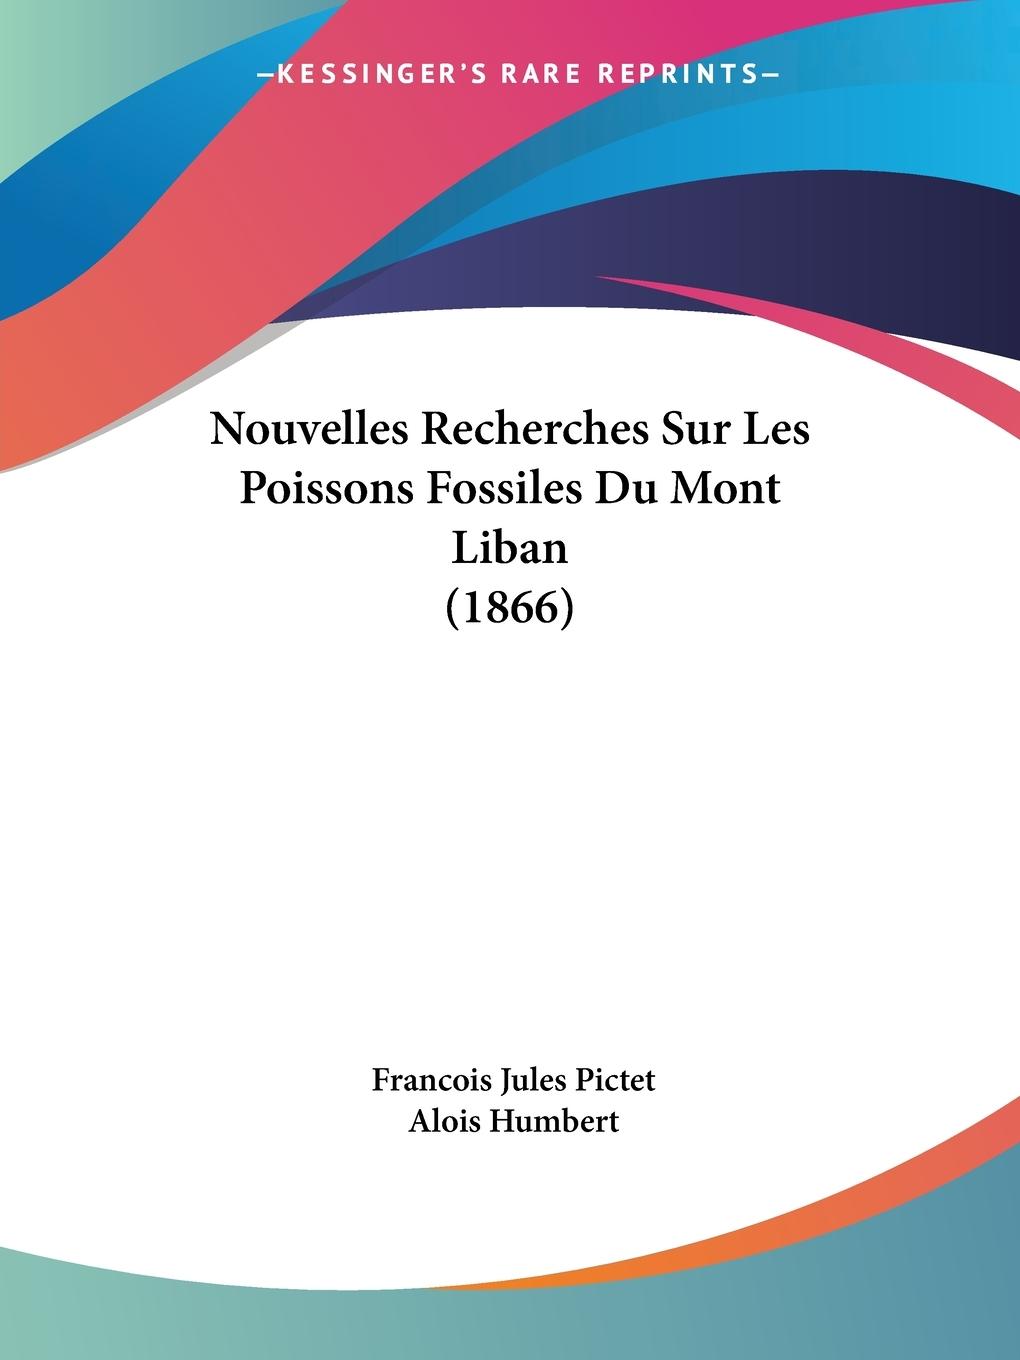 Nouvelles Recherches Sur Les Poissons Fossiles Du Mont Liban (1866) - Pictet, Francois Jules Humbert, Alois